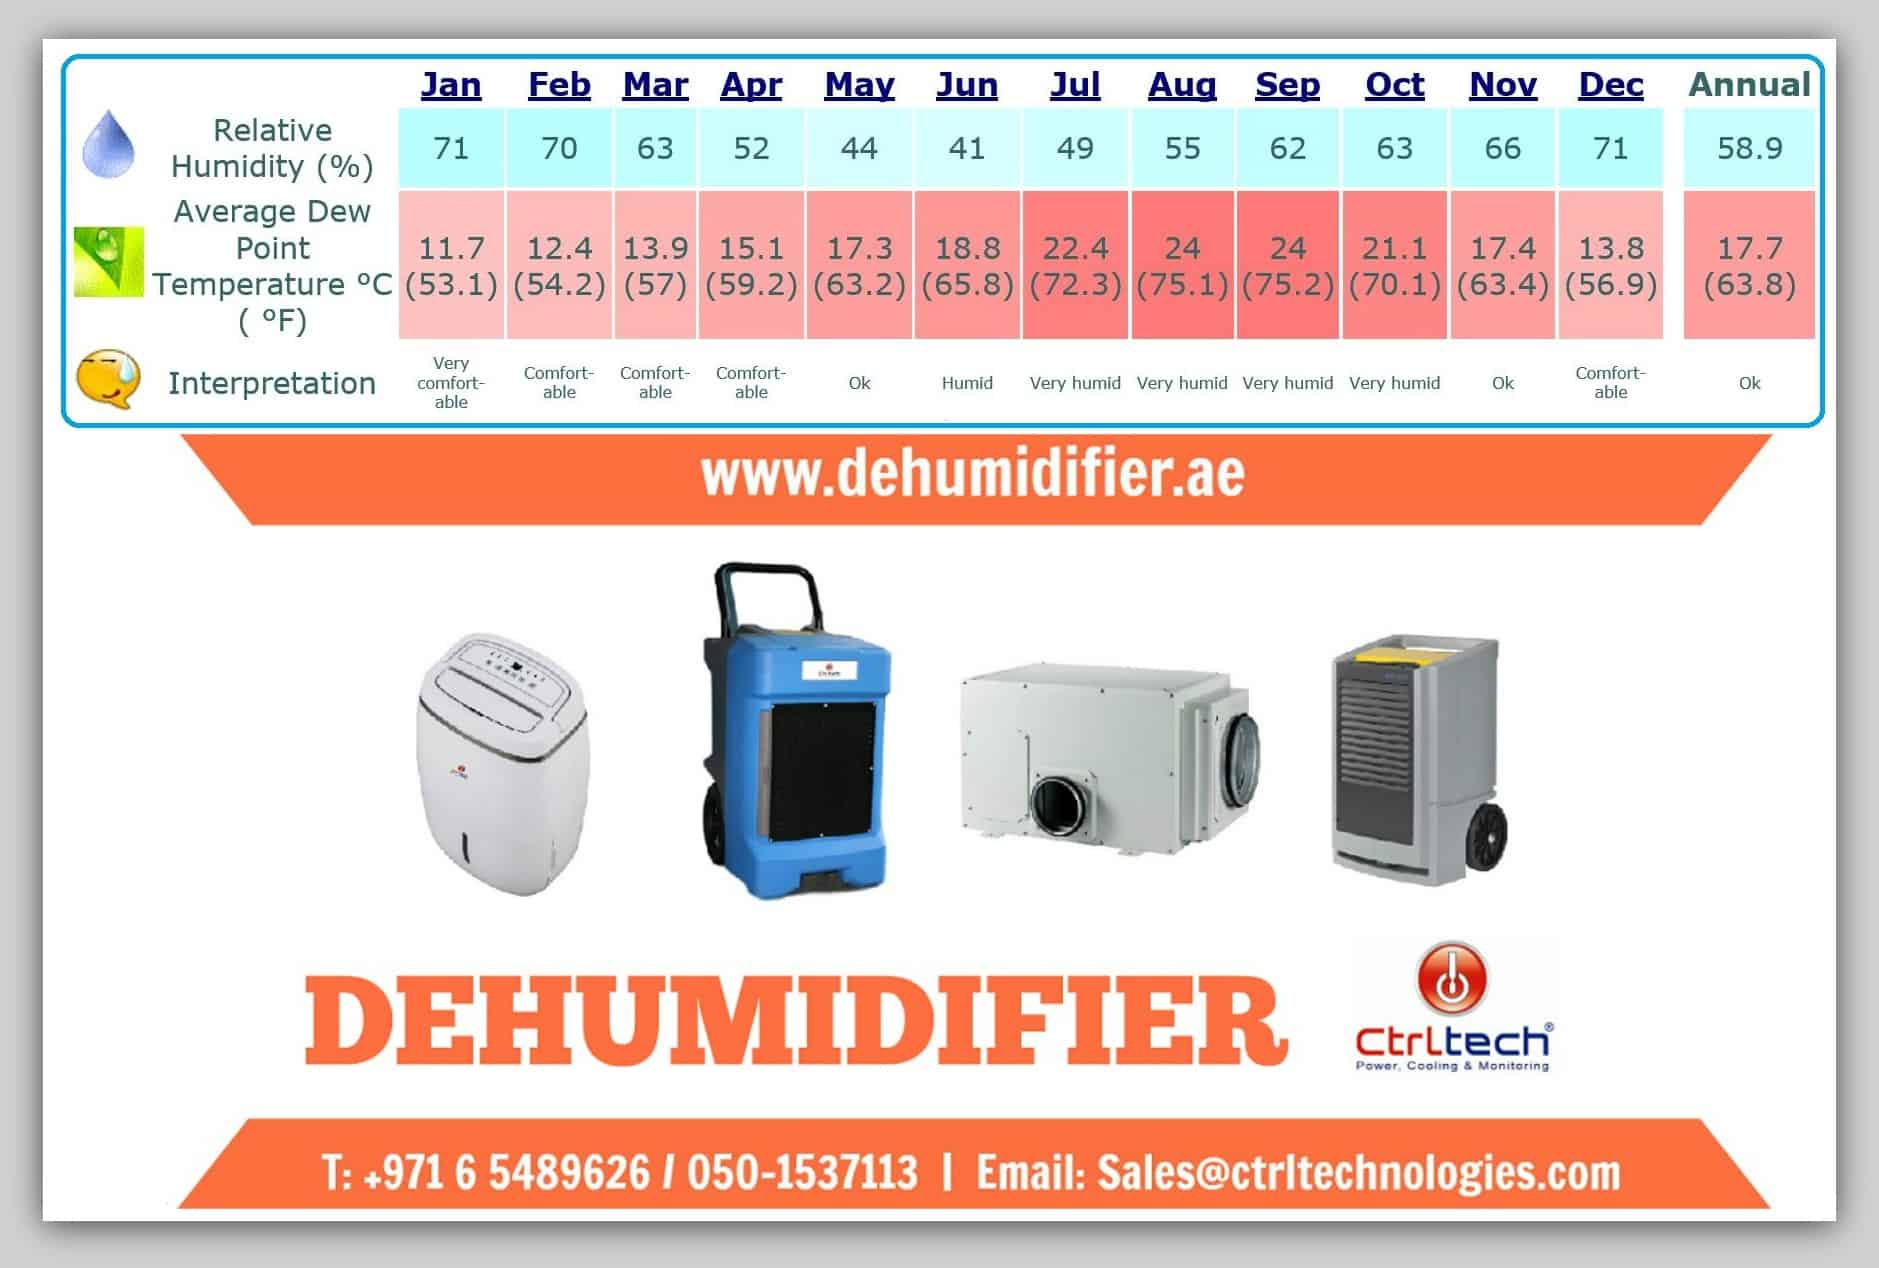 Dehumidifier in Qatar Doha to select Industrial dehumidifier.